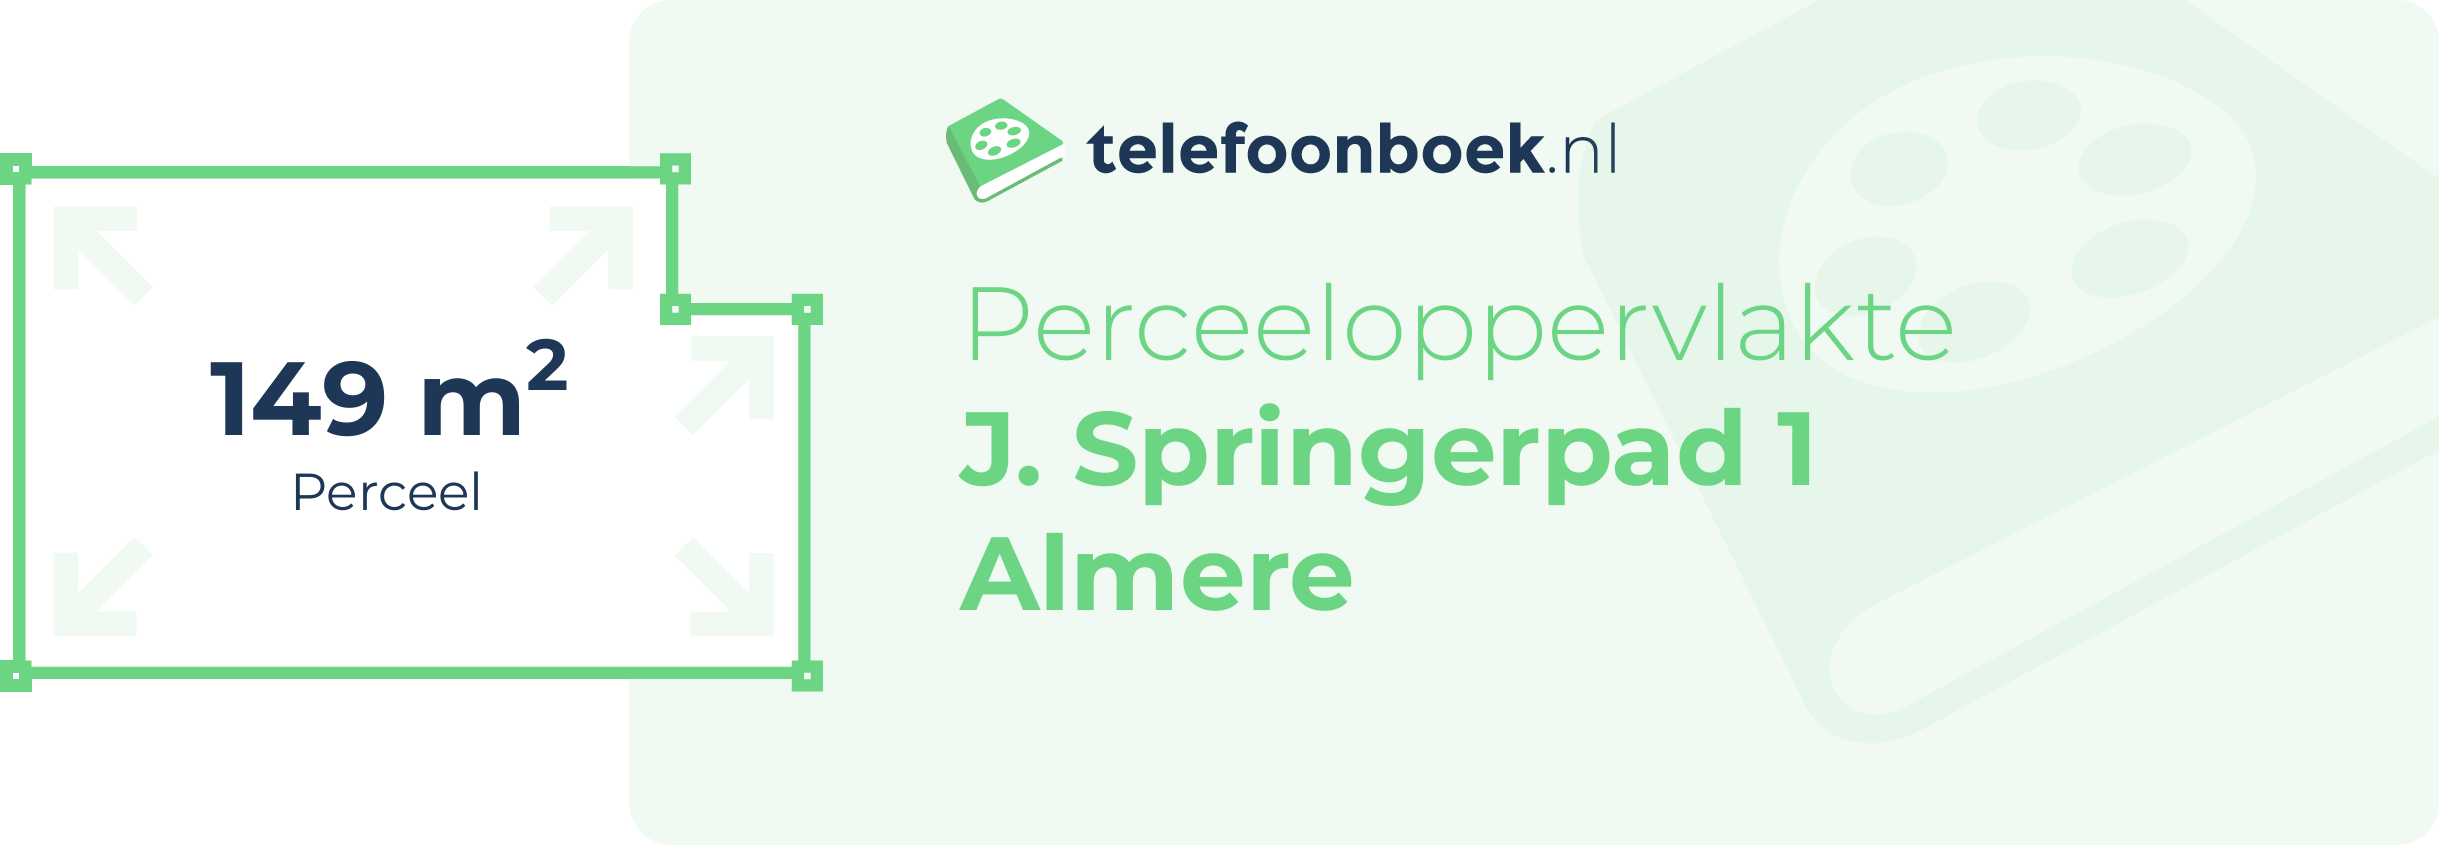 Perceeloppervlakte J. Springerpad 1 Almere